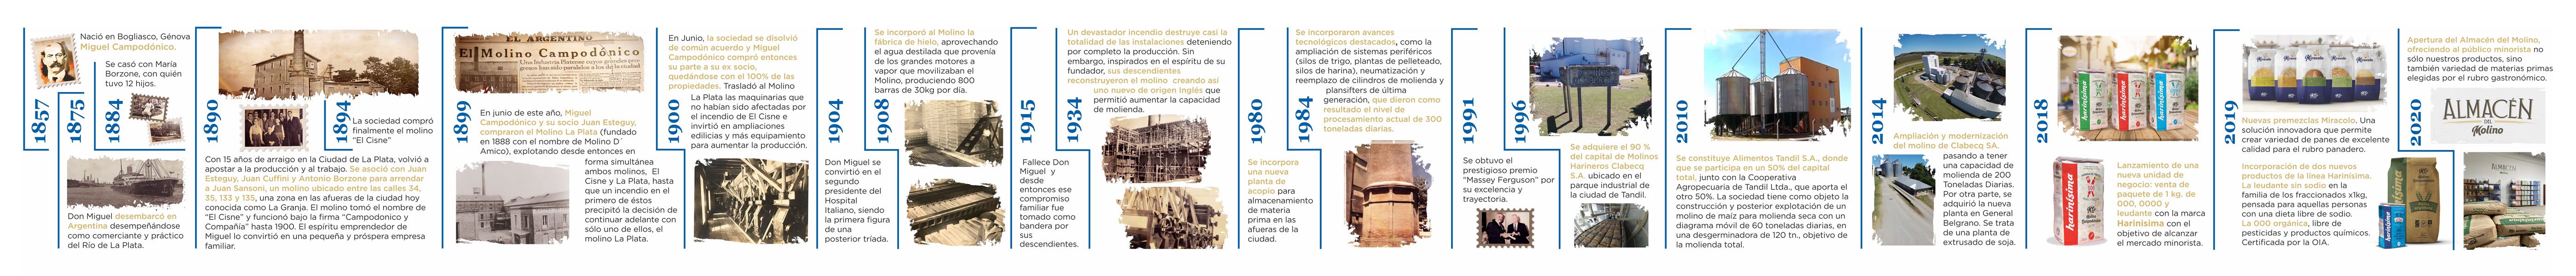 Historia del molino